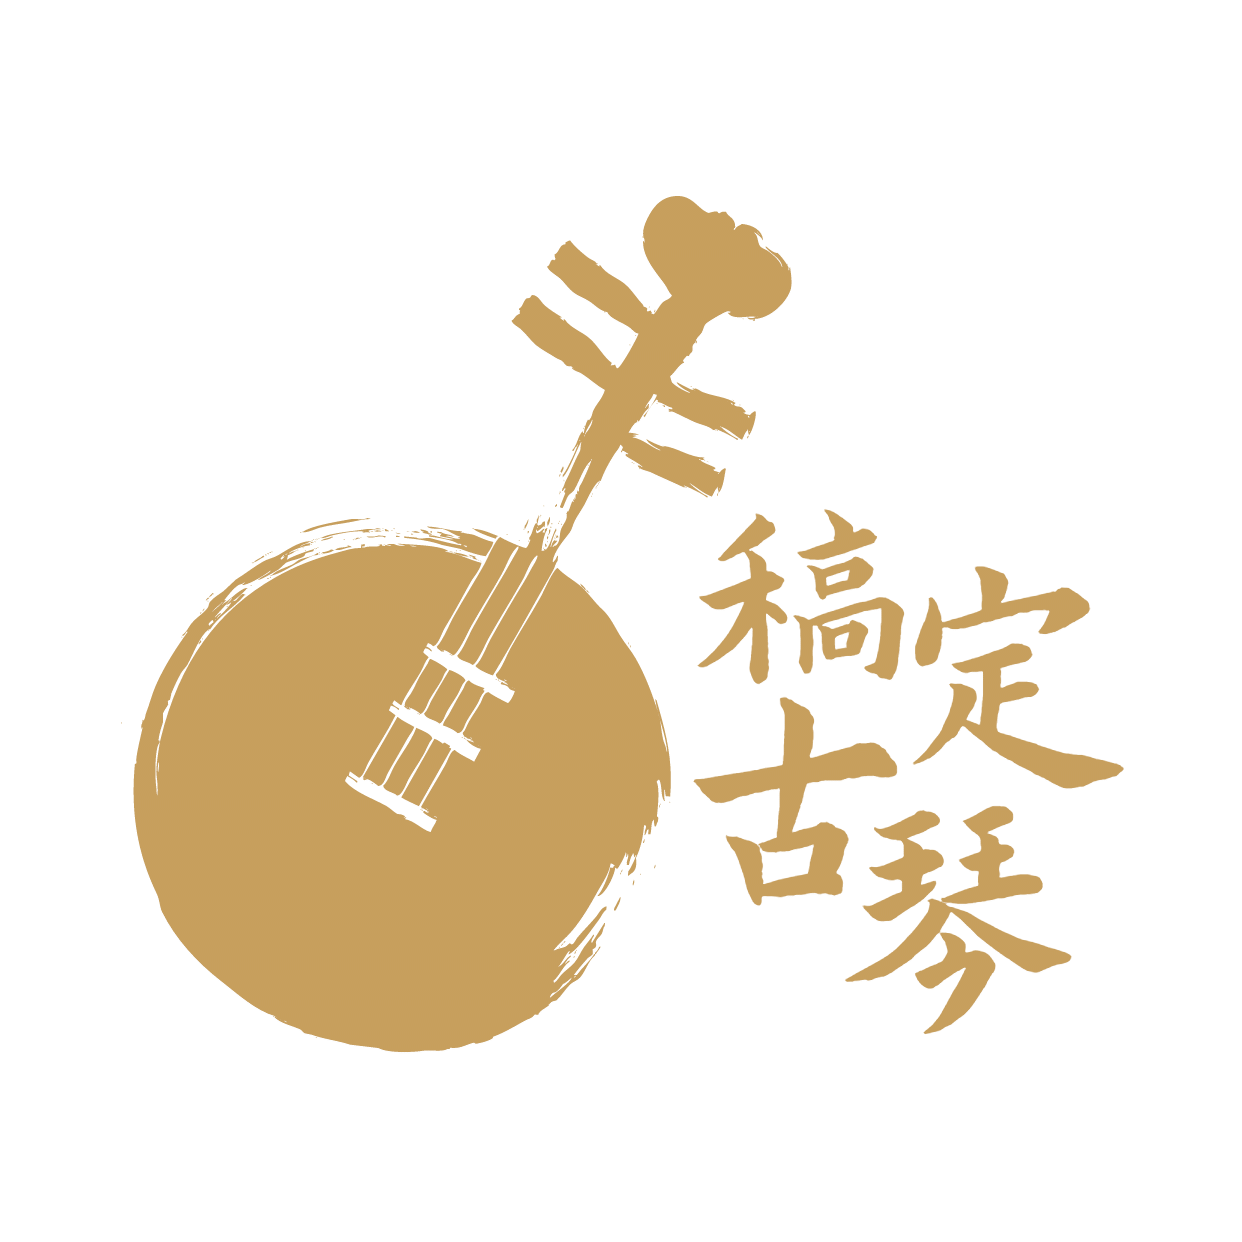 教育培训机构古琴店标logo